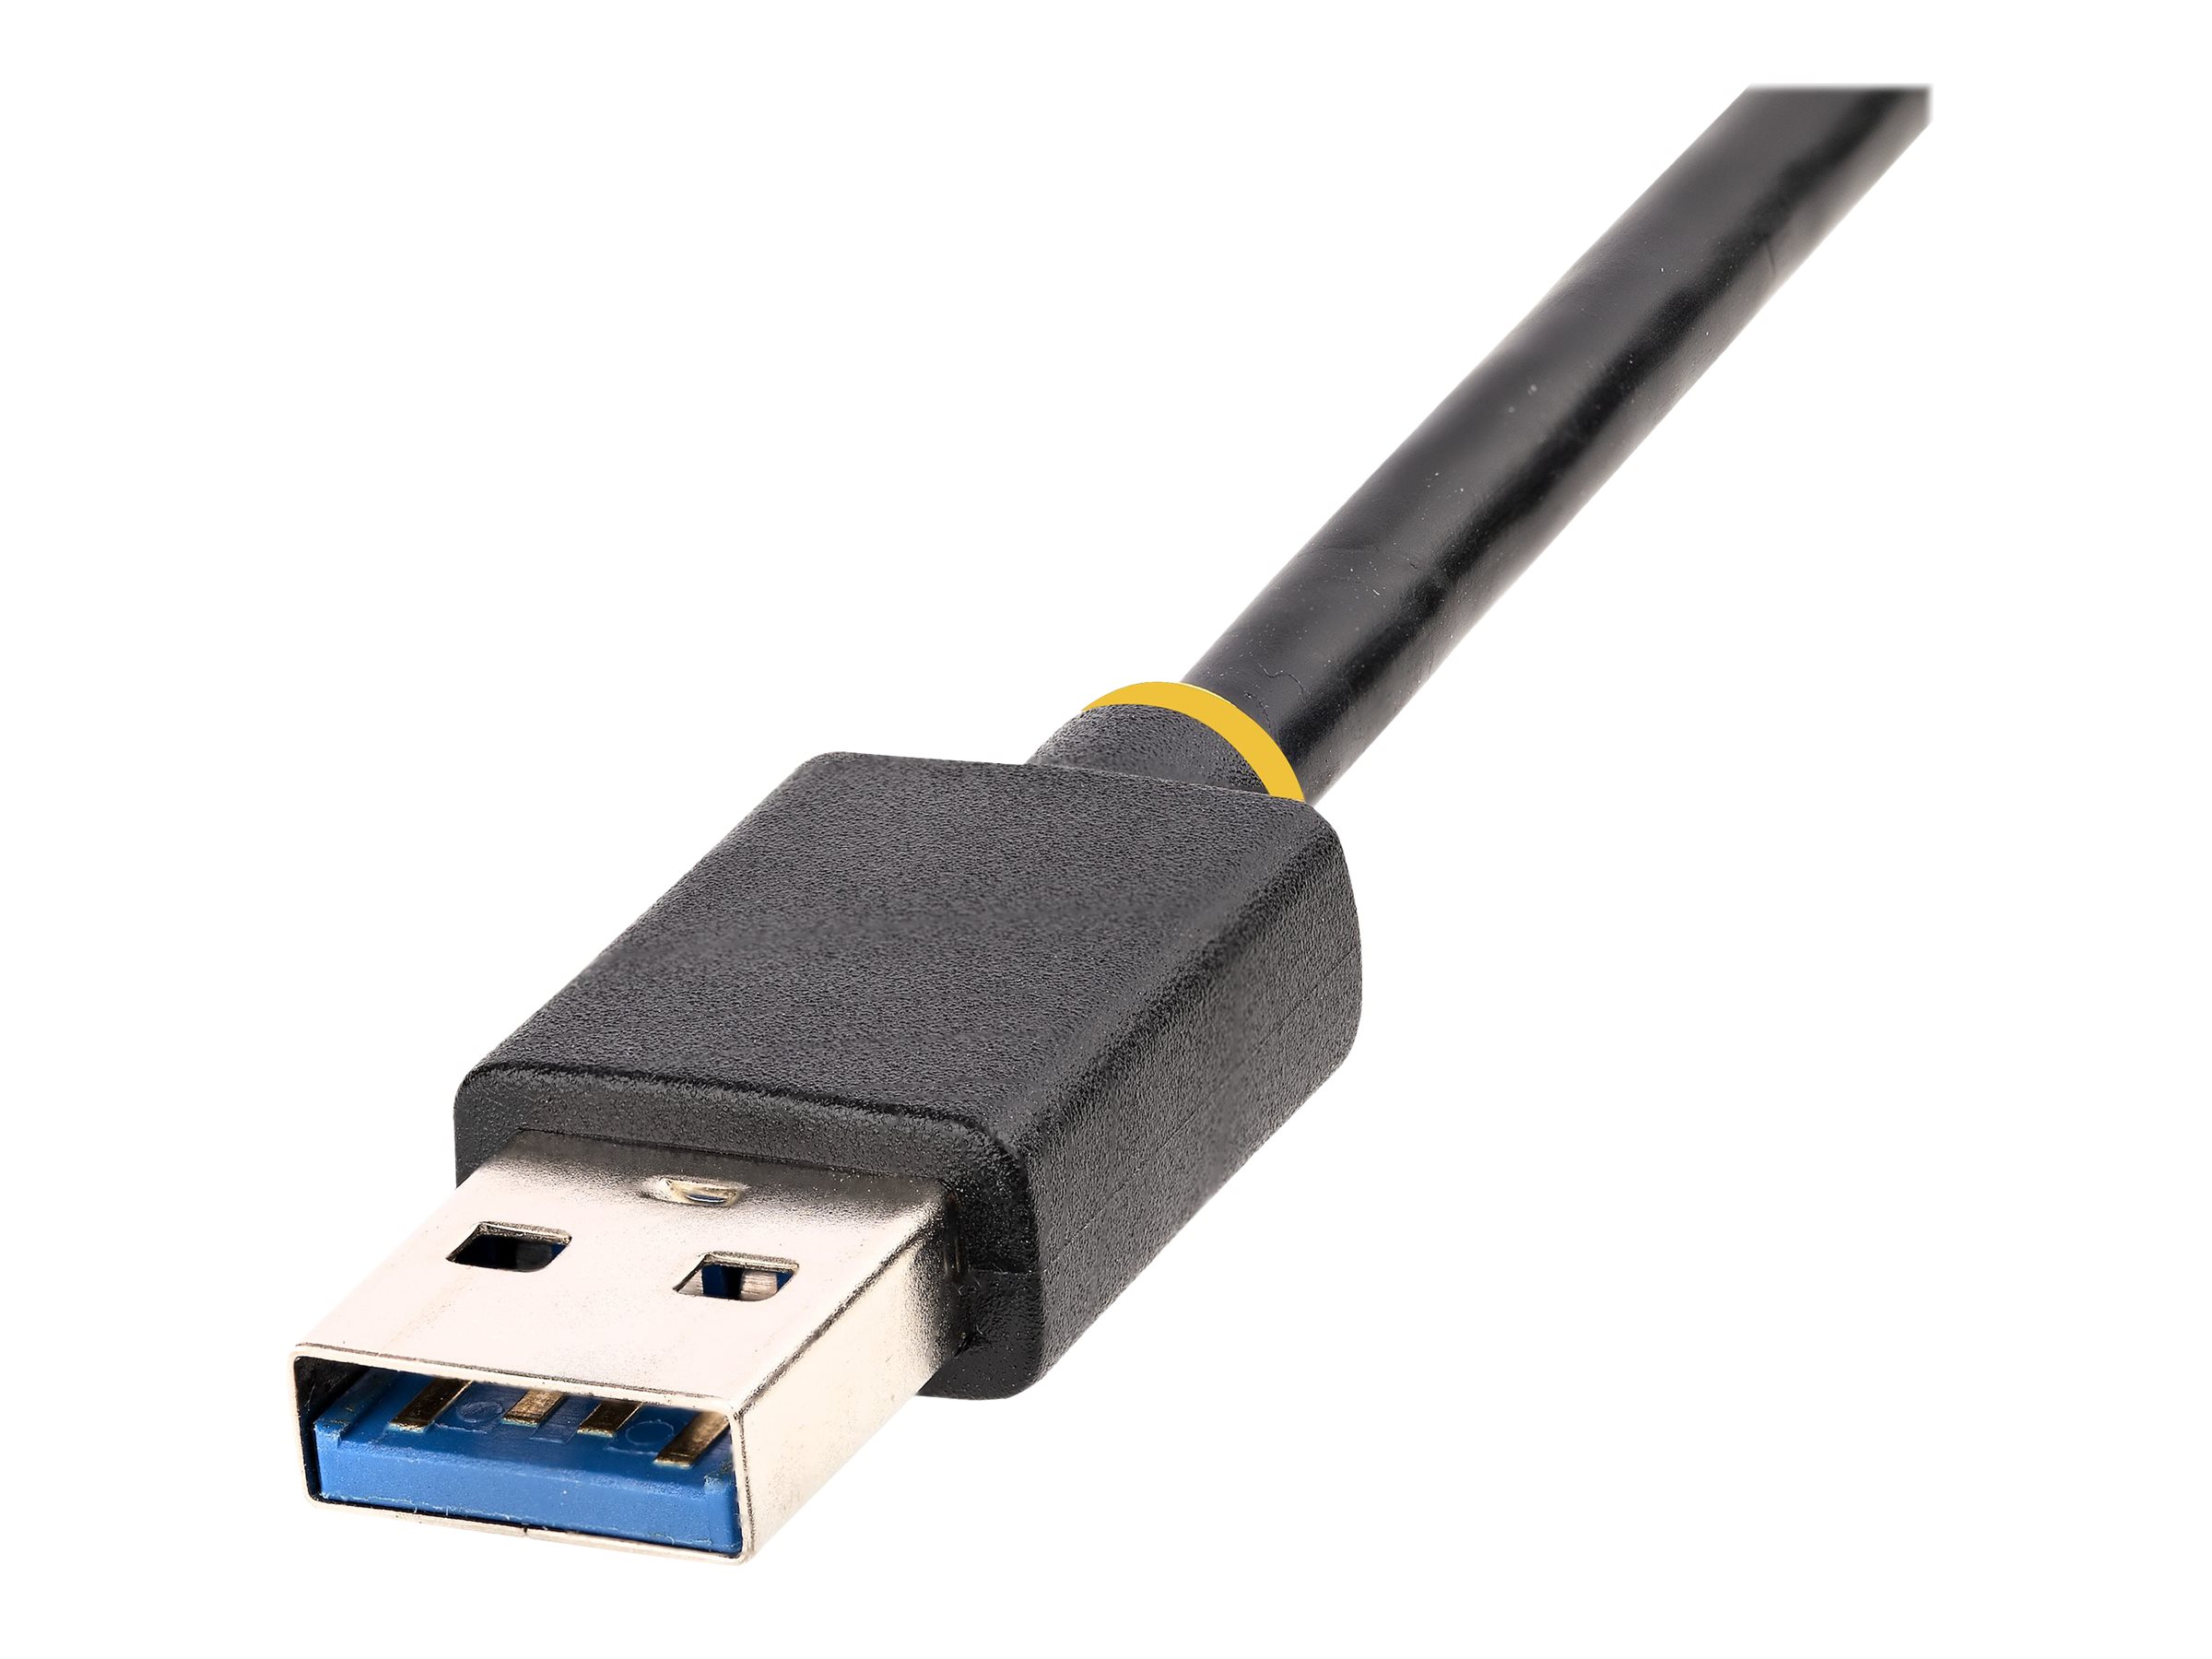 StarTech.com Adaptateur Ethernet USB 3.0 vers 10/100/1000 Gigabit Ethernet  - Câble RJ45 vers USB - Cordon USB RJ45 de 30cm - Convertisseur RJ45 USB  (USB31000S2) - adaptateur réseau - USB 3.2 Gen 1 - Gigabit Ethernet x 1